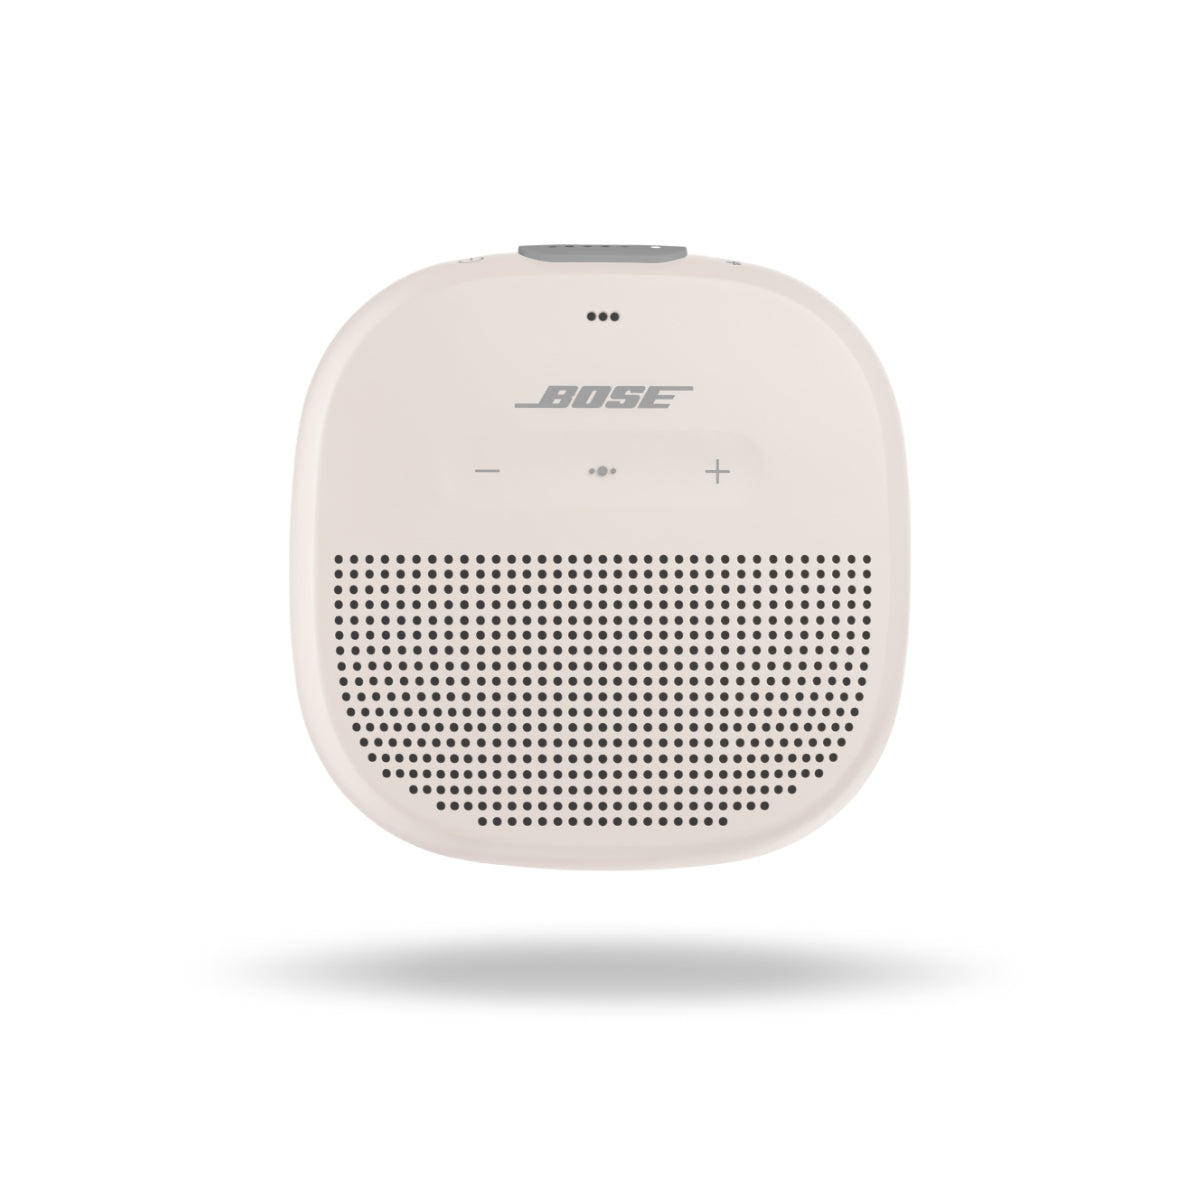 Bluetooth reproduktor Bose SoundLink Micro, bílý | OKAY.cz